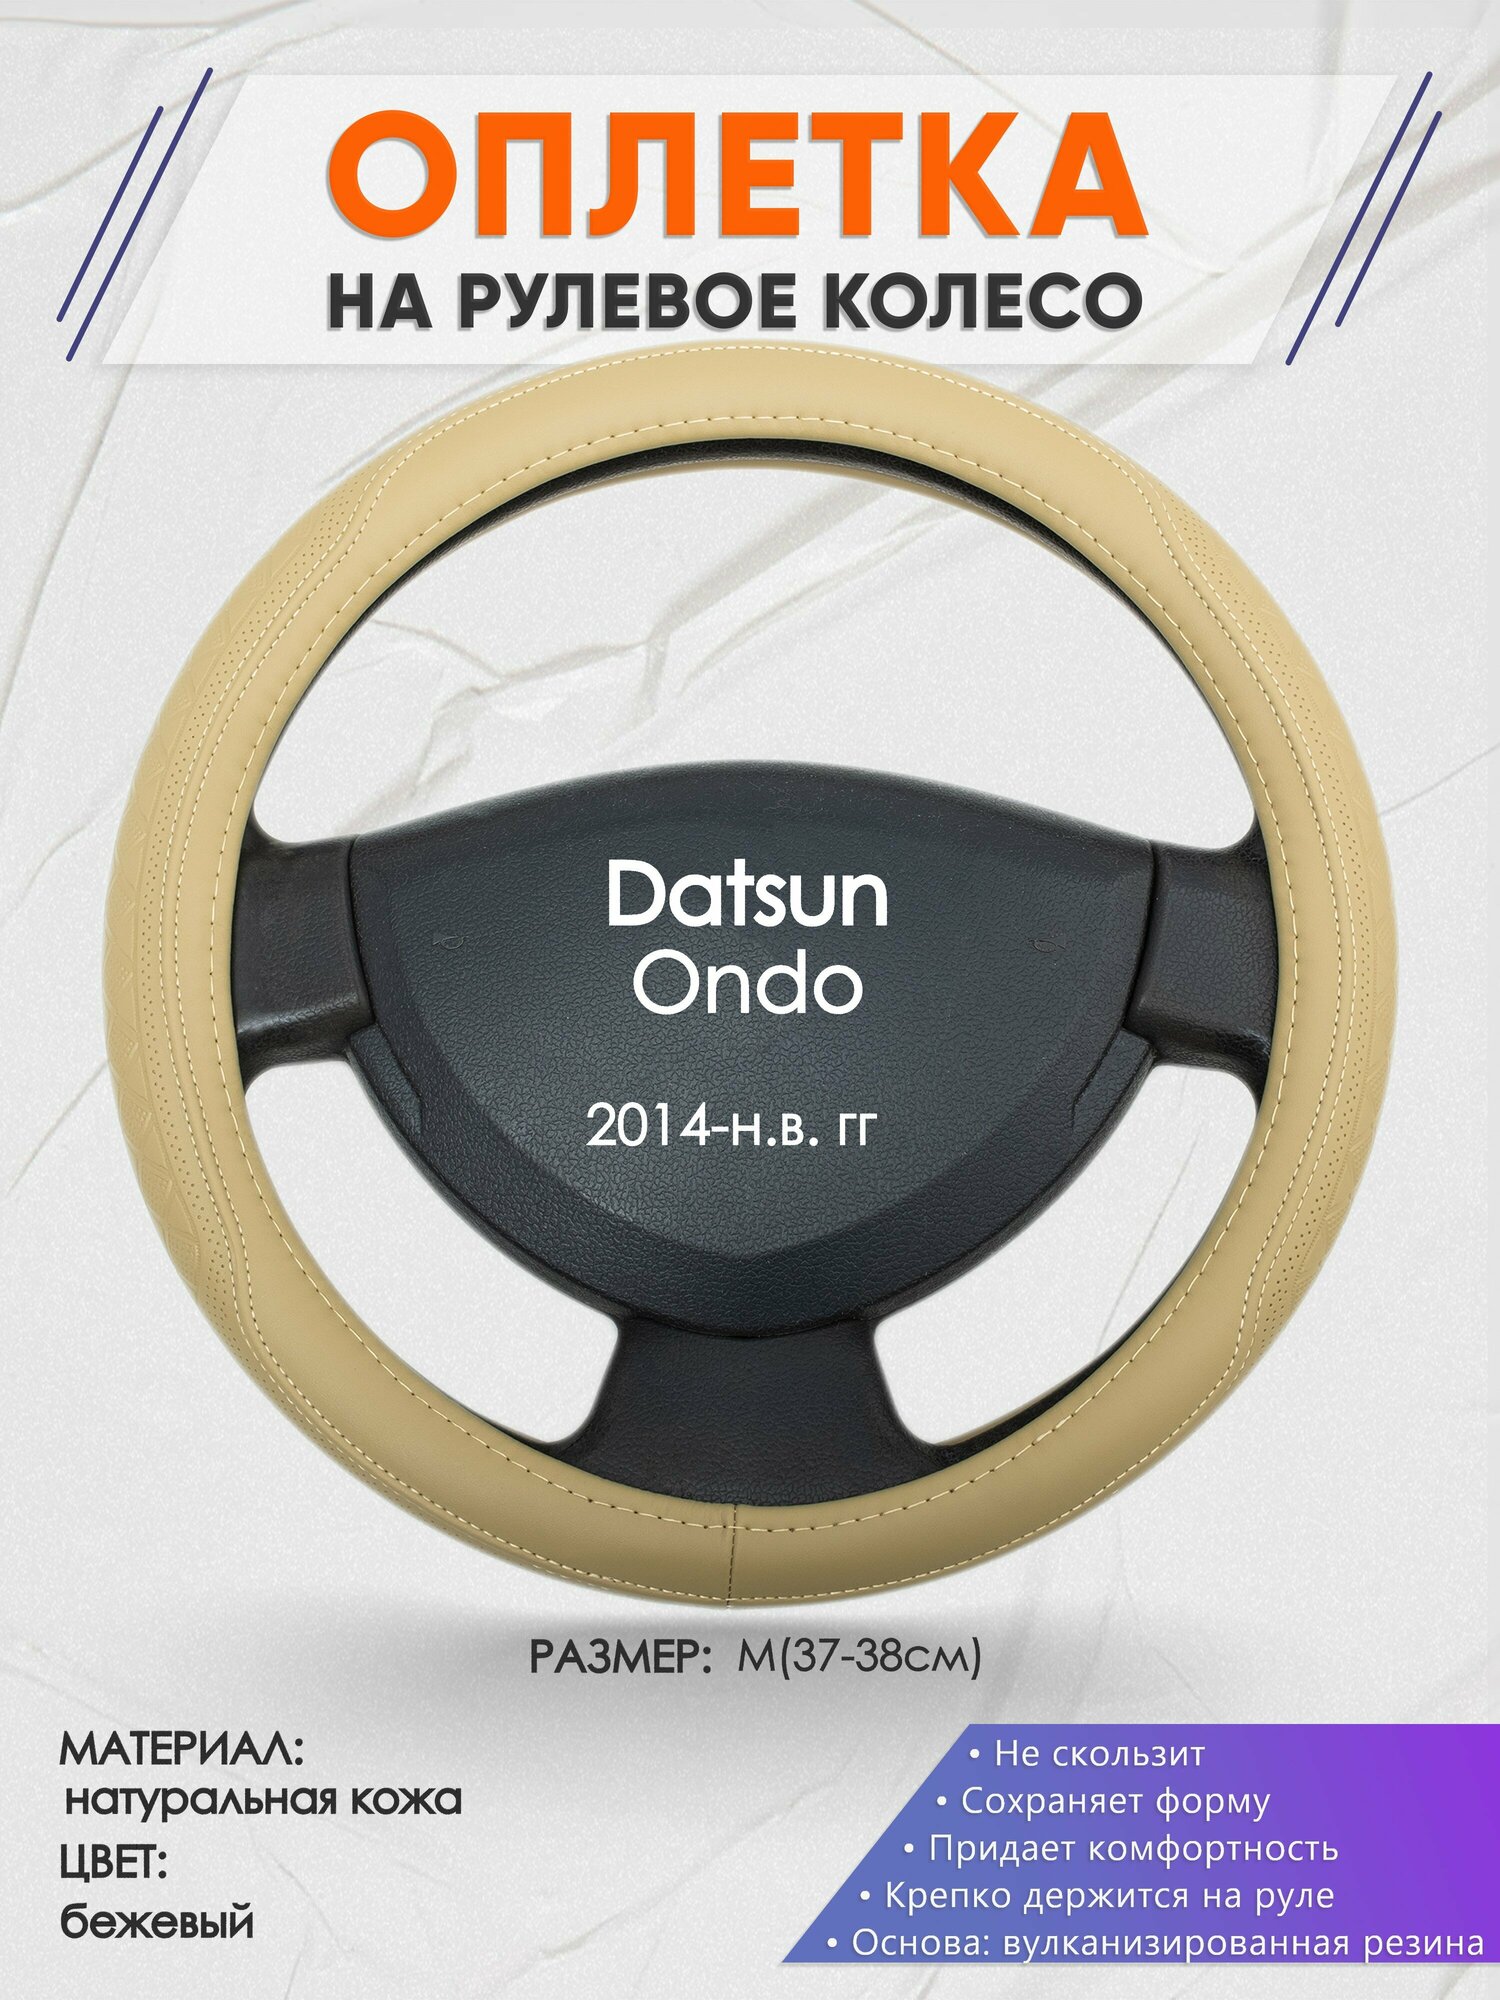 Оплетка на руль для Datsun Ondo (Датсун Он-до) 2014-н. в, M(37-38см), Натуральная кожа 91